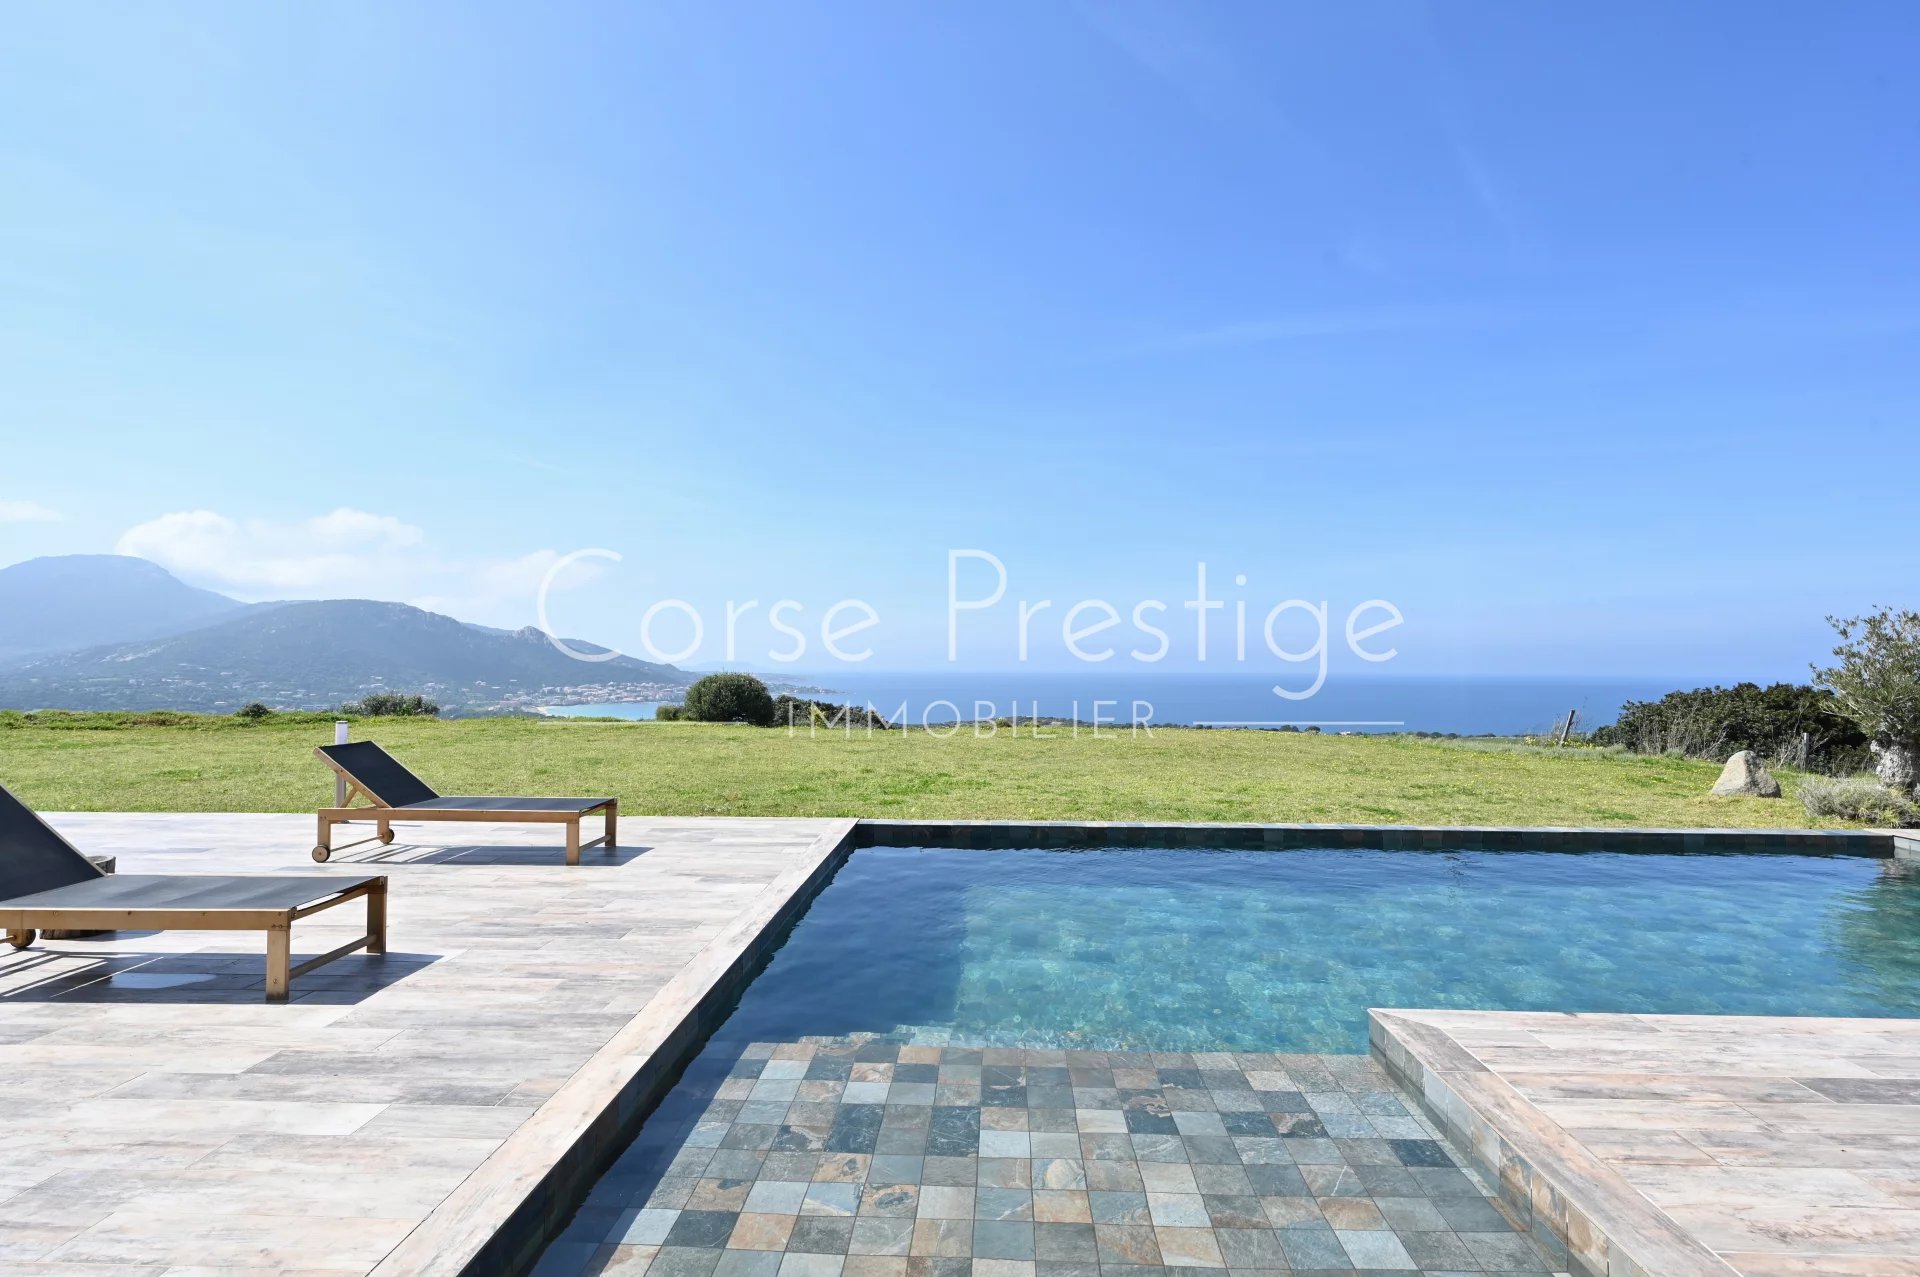 contemporary architect villa for sale in corsica - breathtaking sea views - corbara, north corsica image4